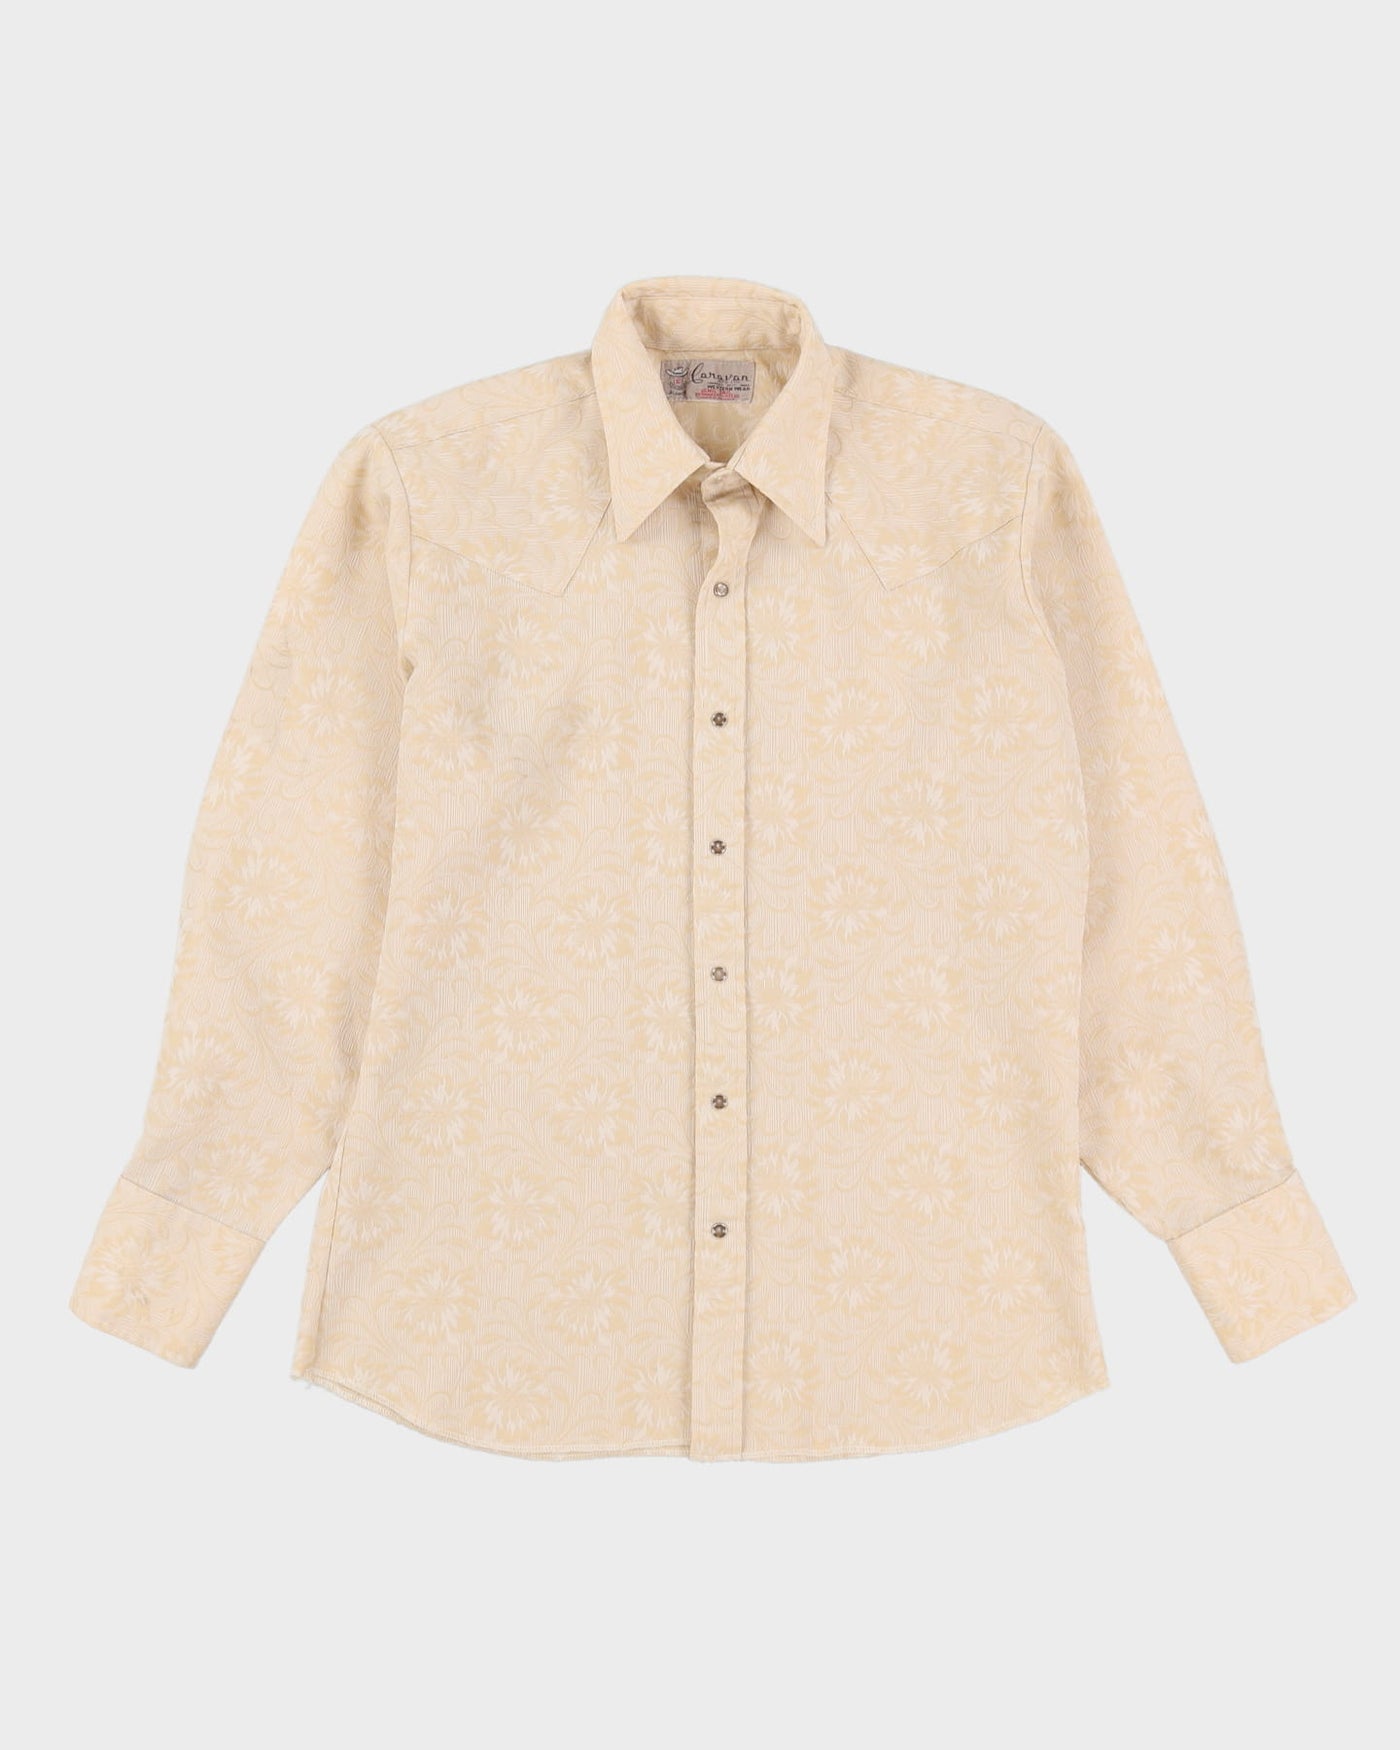 70s Caravan Western Wear Long-Sleeve Button-Up Shirt - XL